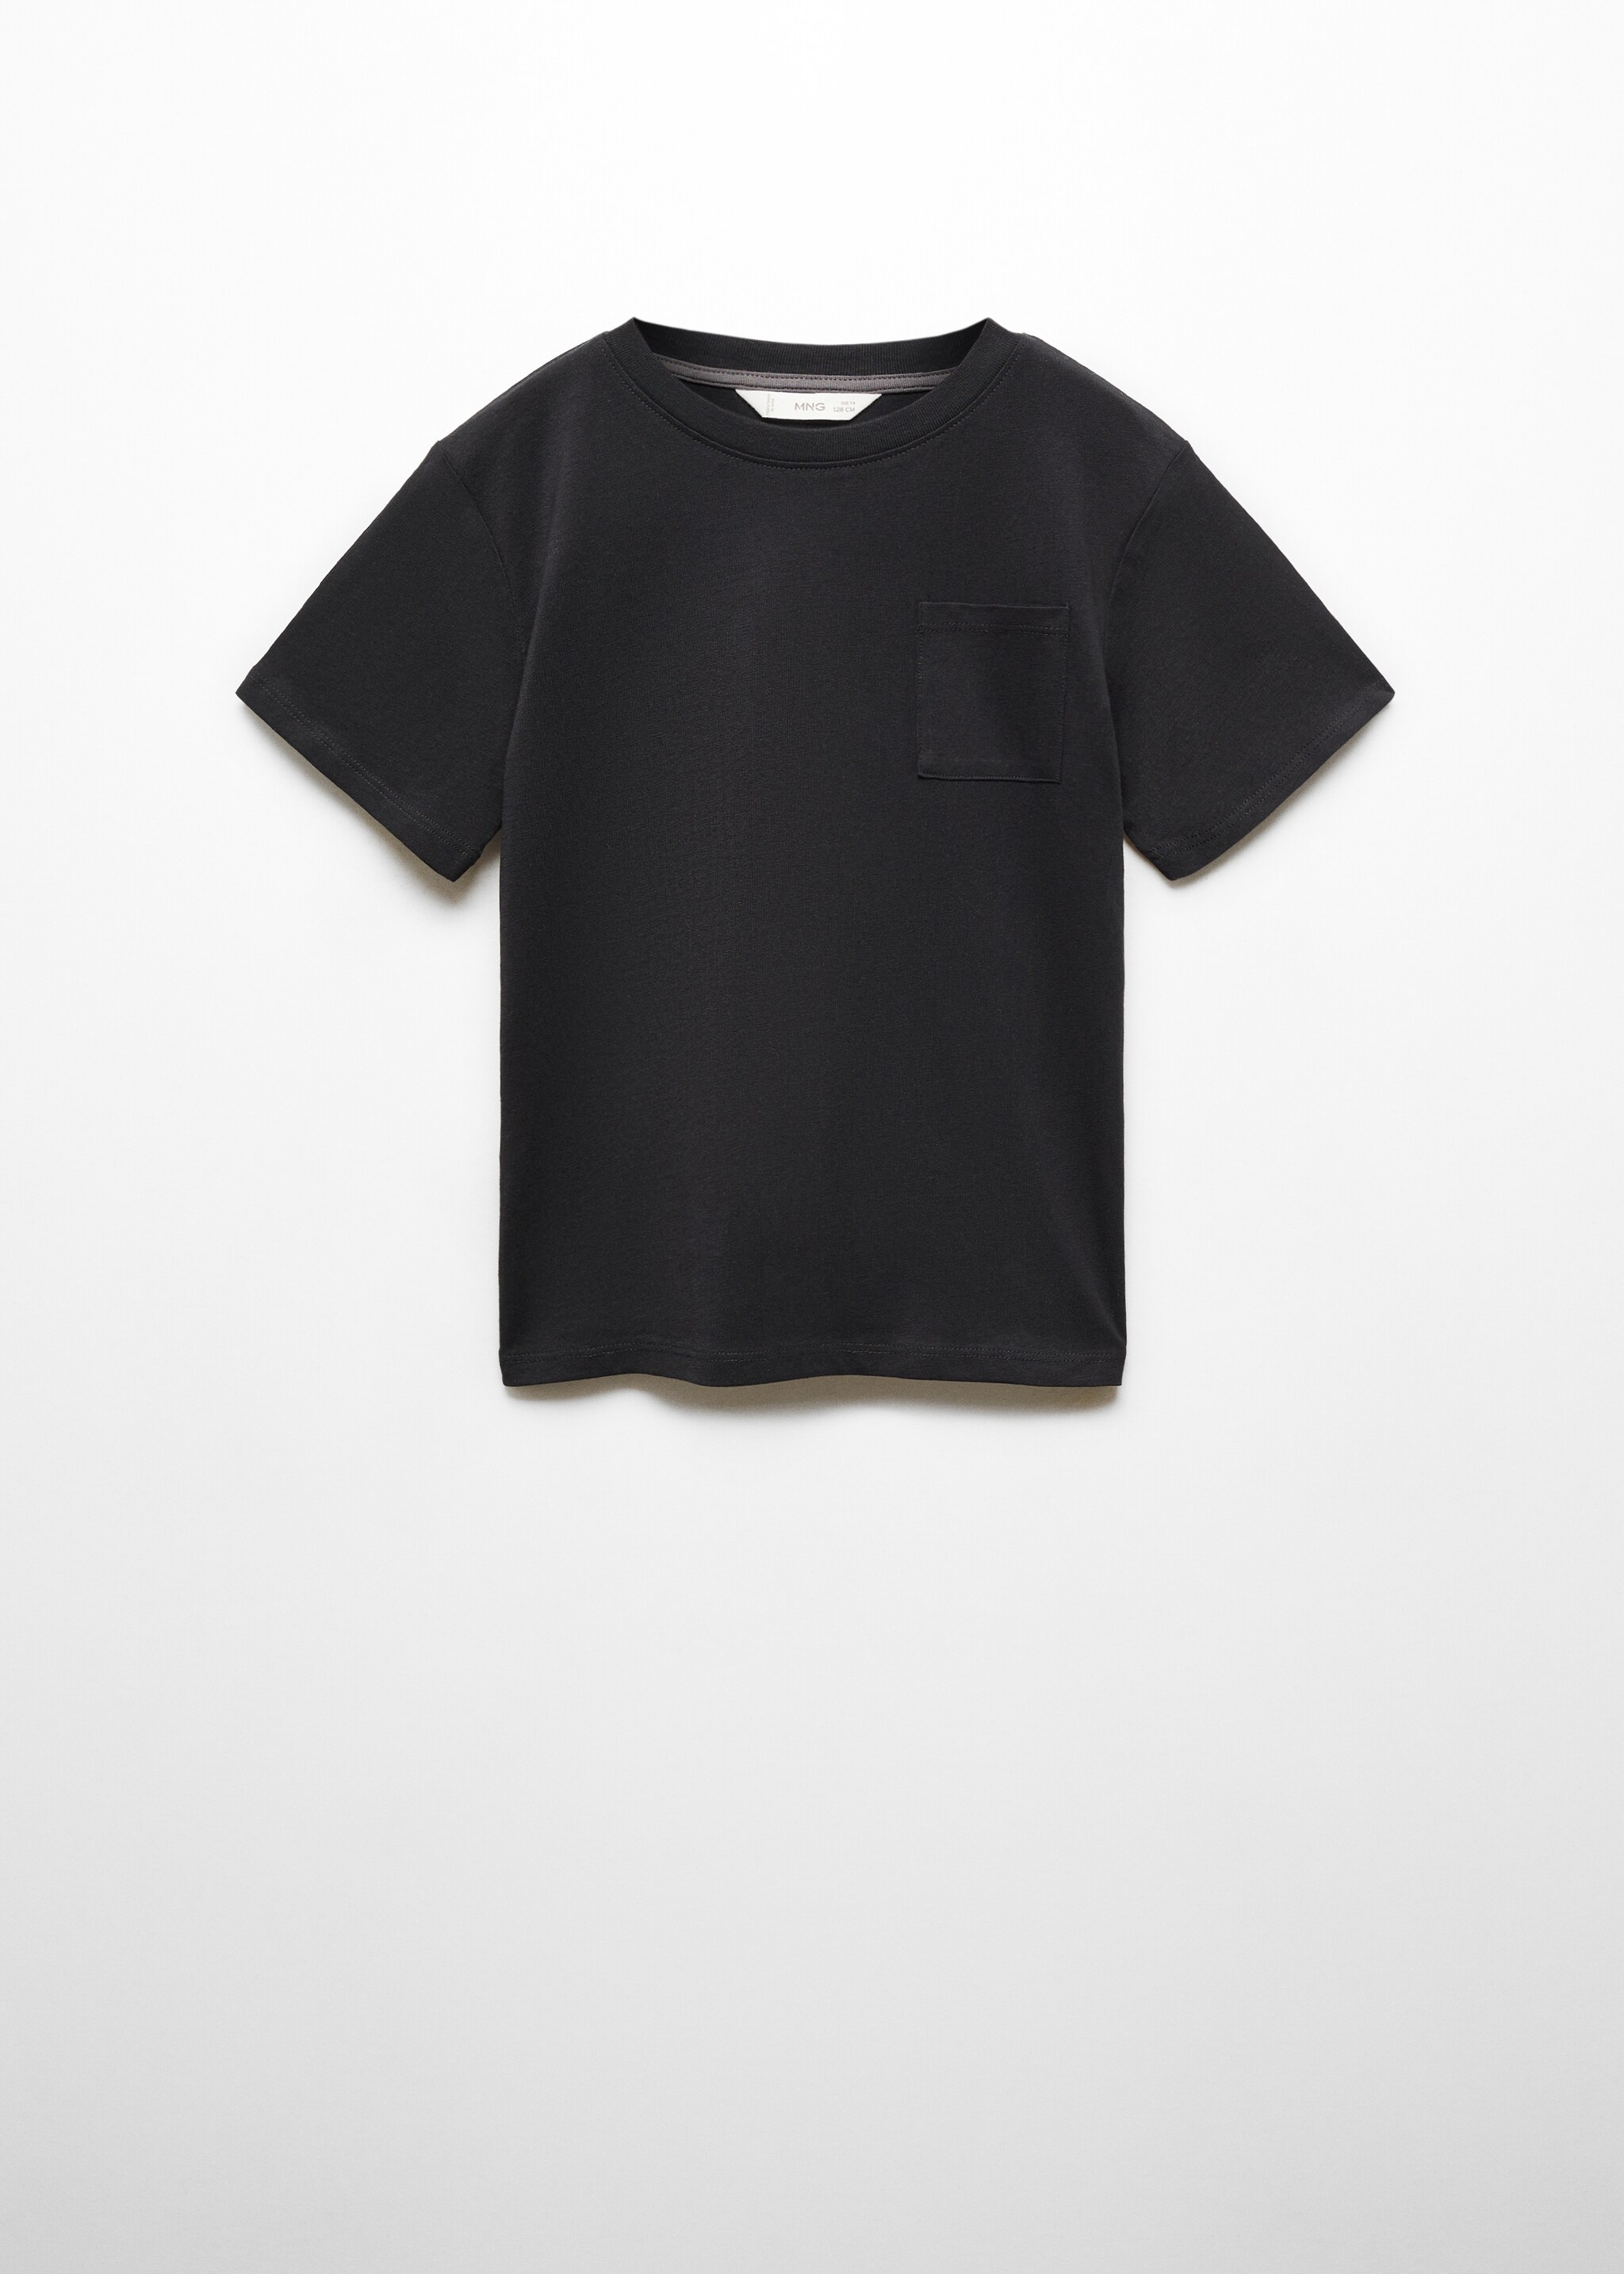 T-shirt básica algodão - Artigo sem modelo